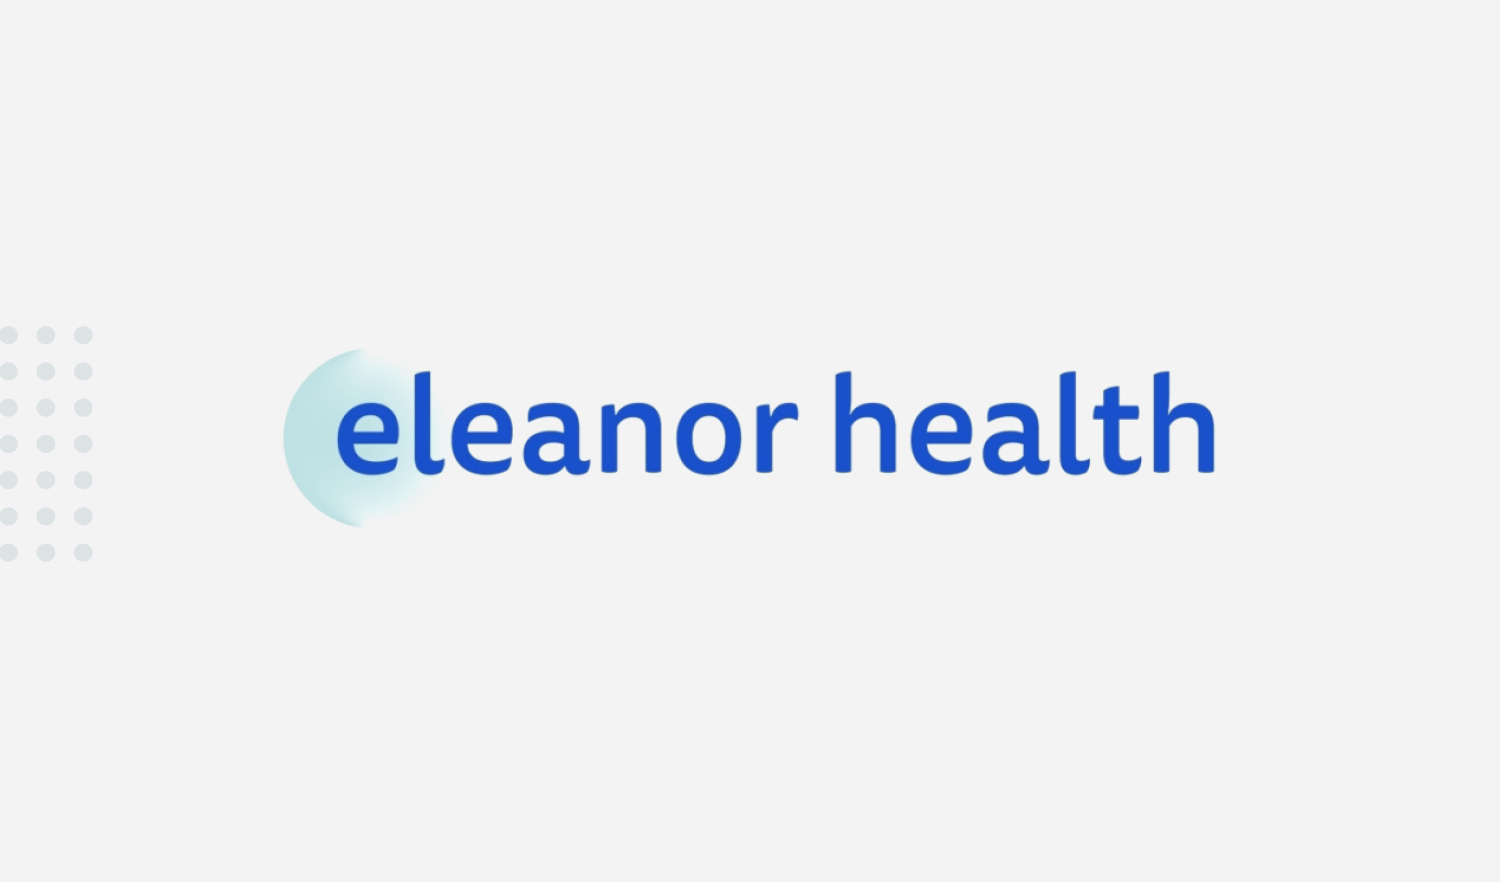 Eleanor Health Echo